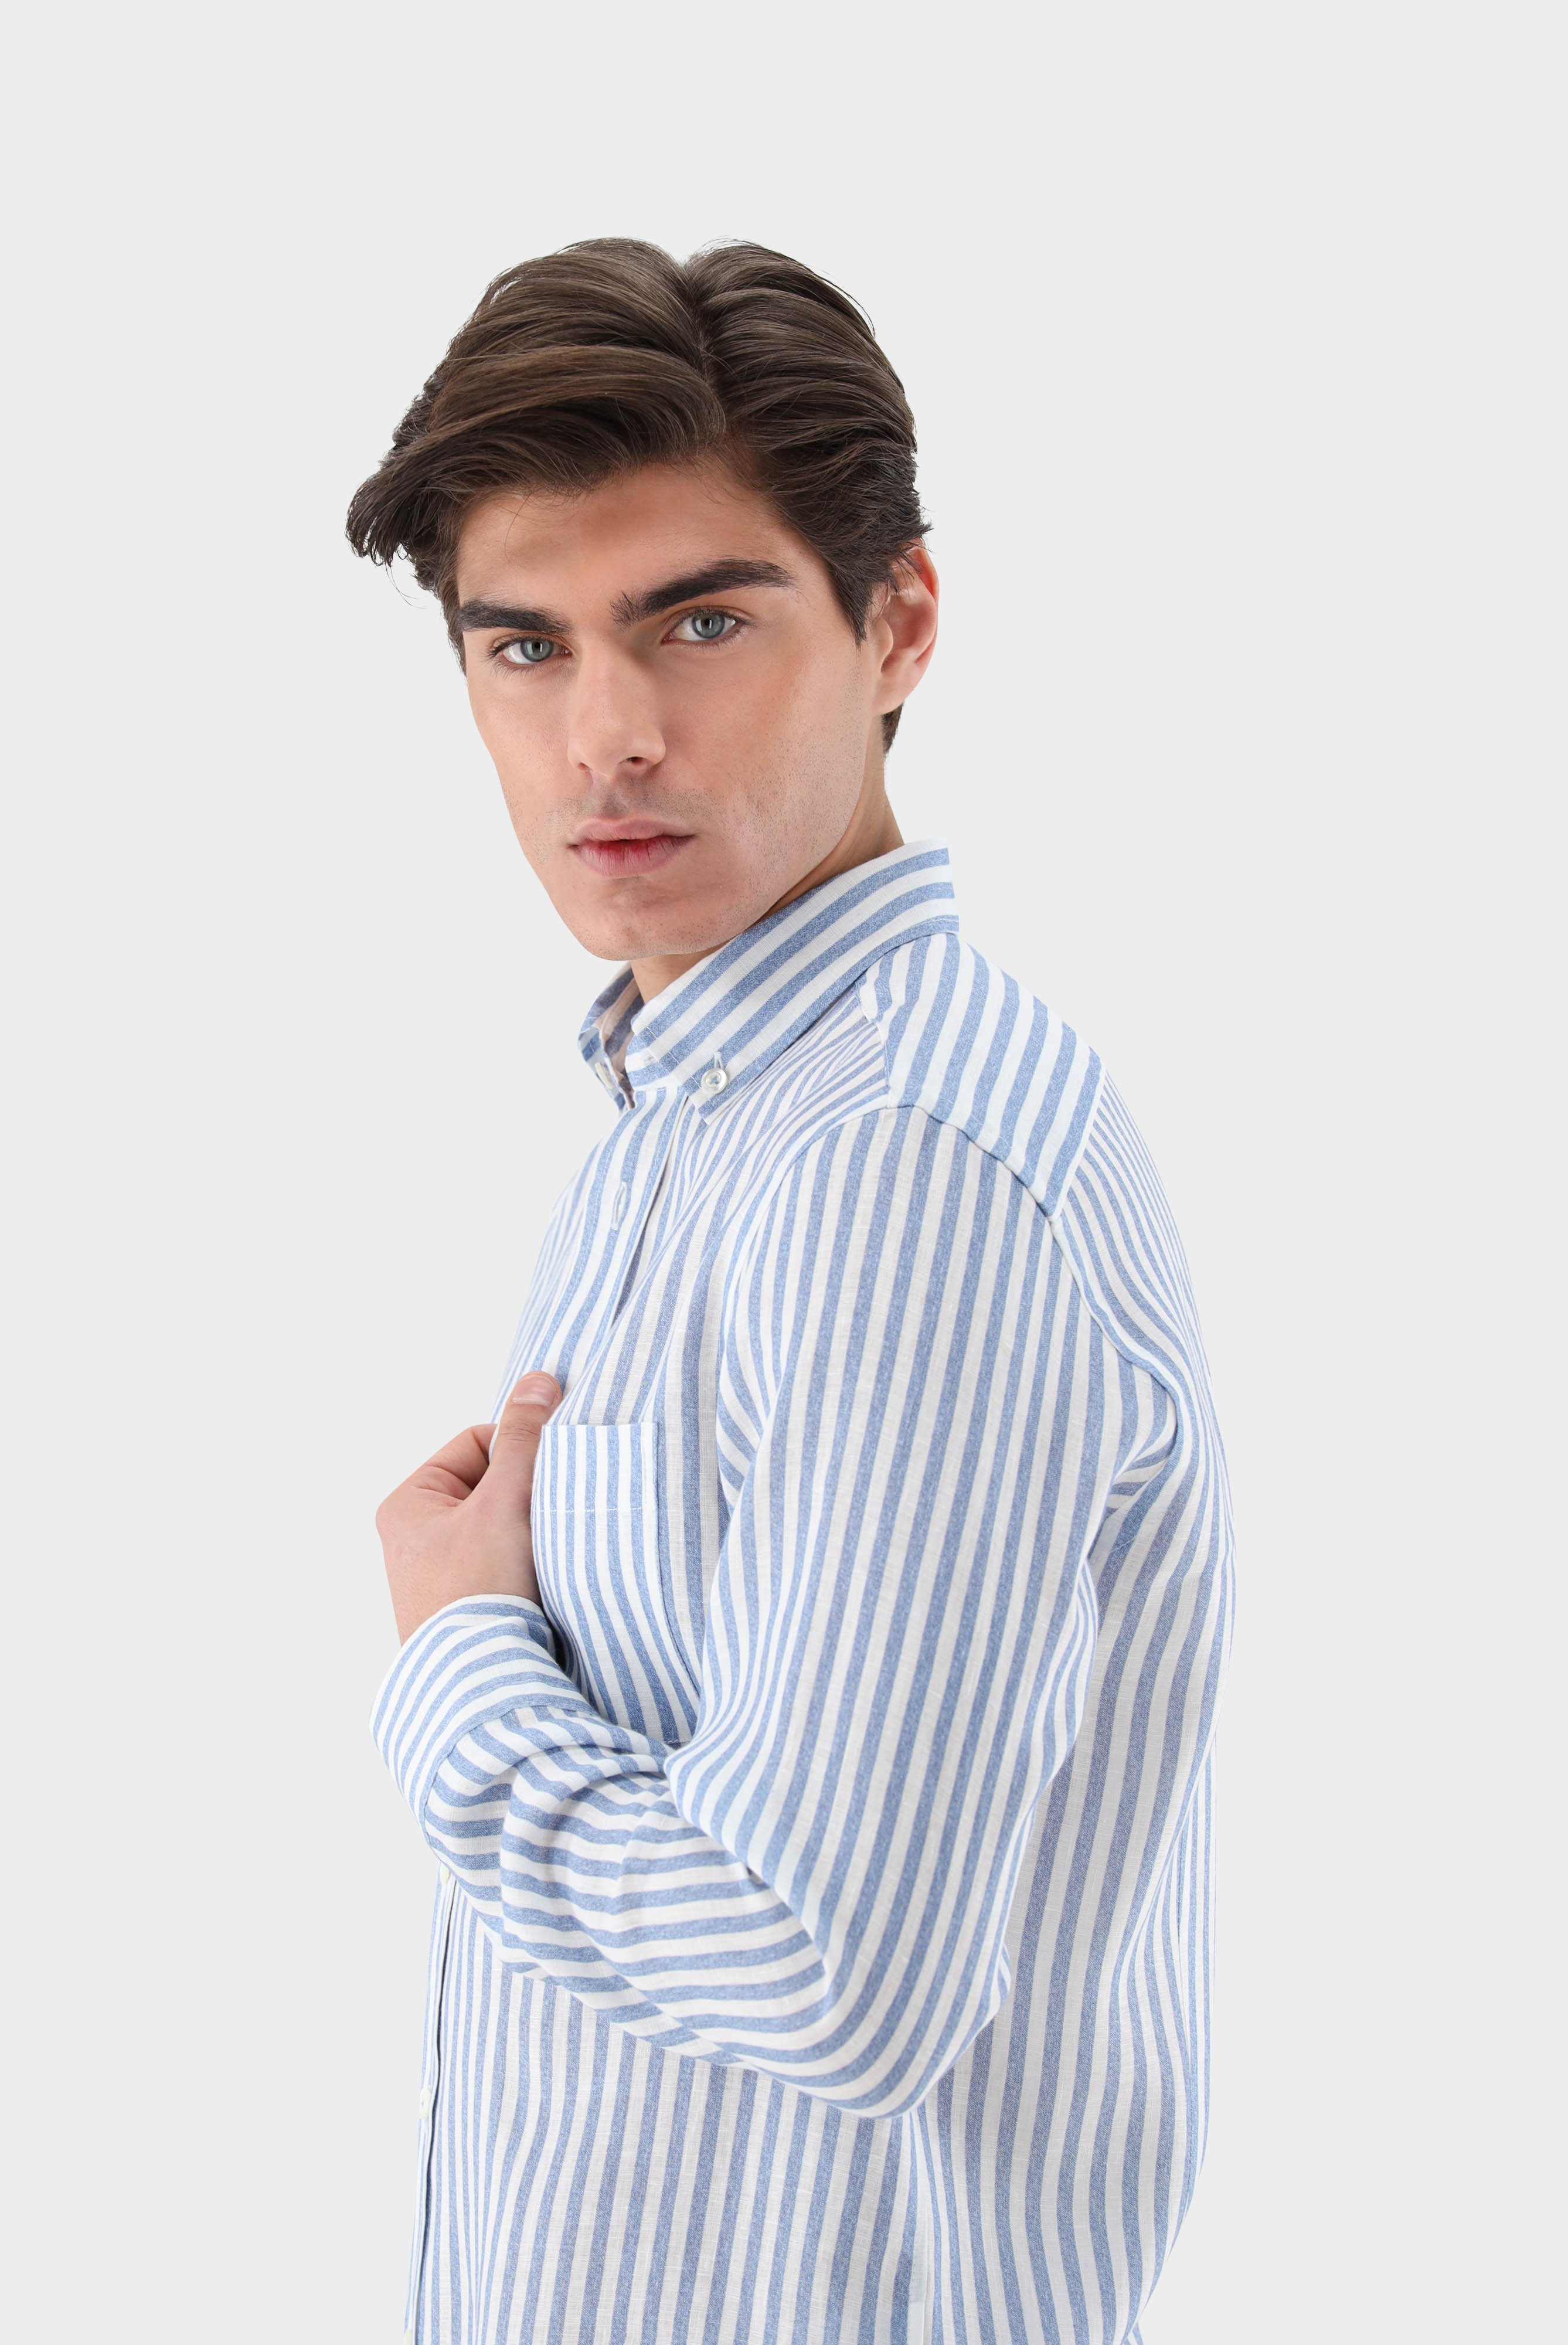 Casual Hemden+Leinenhemd mit Streifen-Druck Tailor Fit+20.2013.9V.170352.740.38